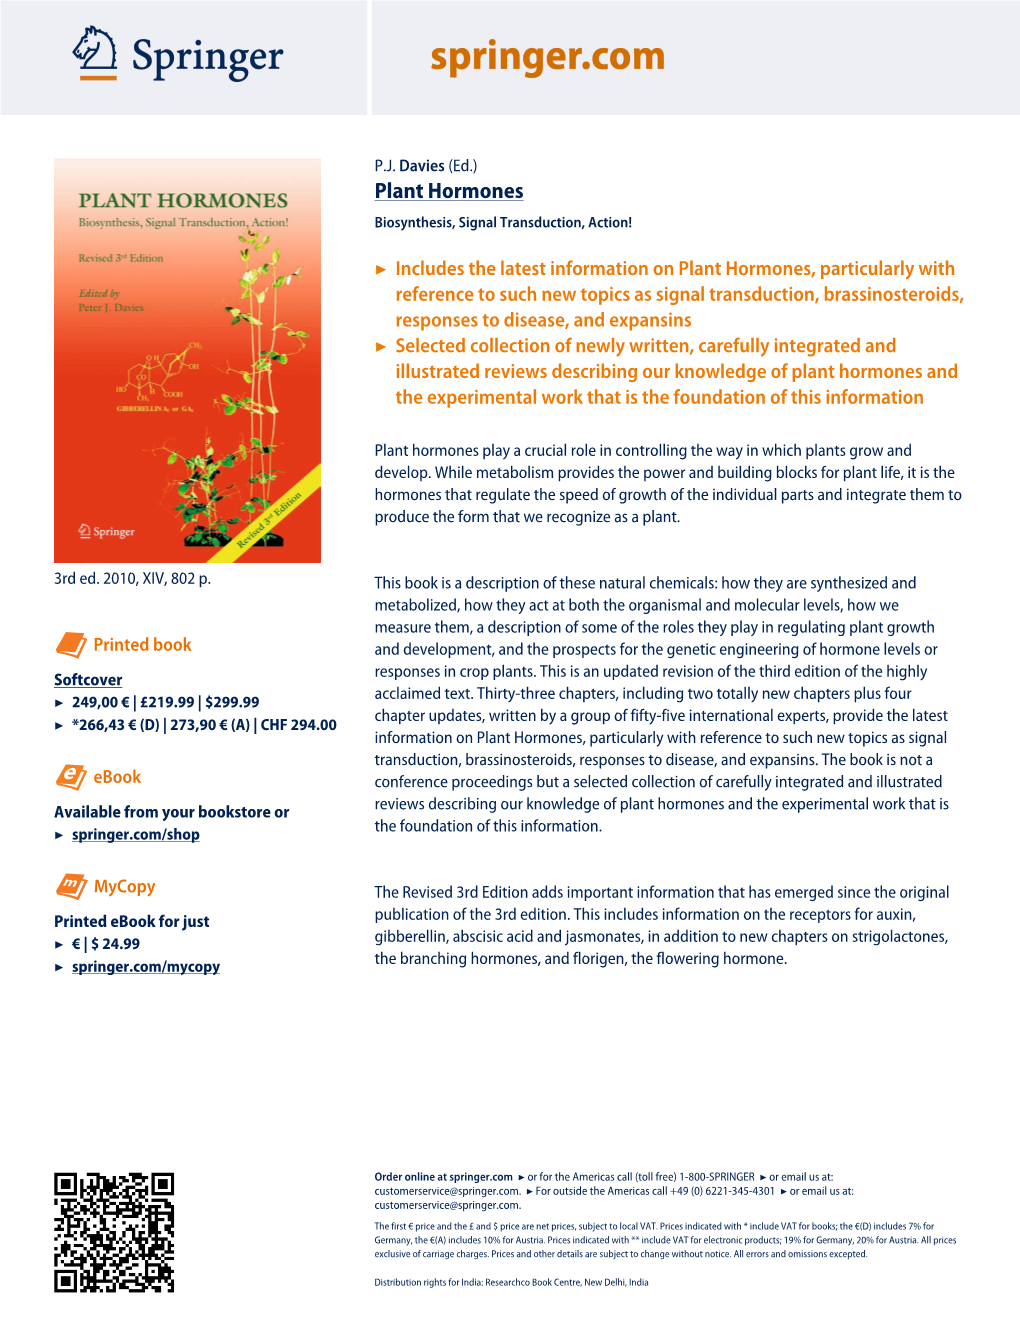 Plant Hormones Biosynthesis, Signal Transduction, Action!